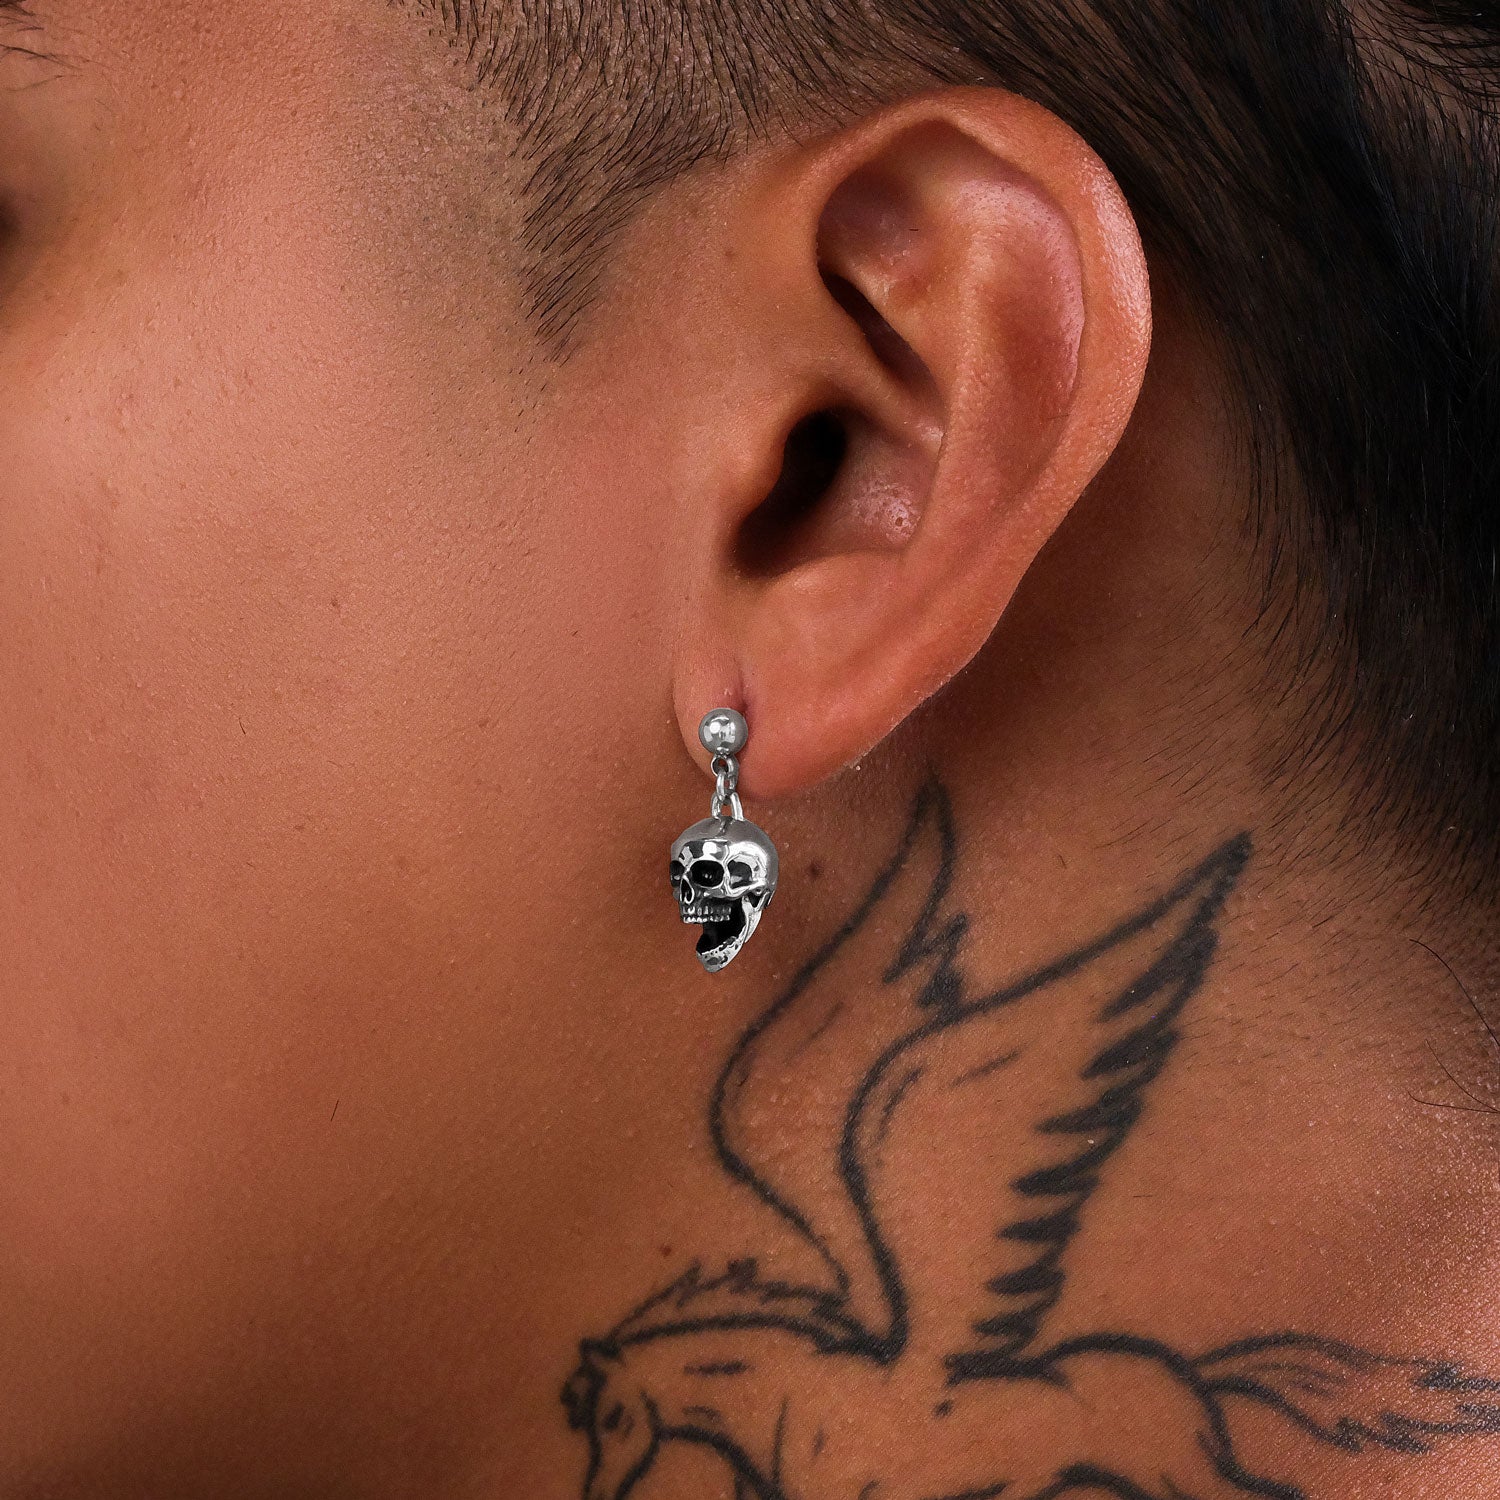 Men's skull earrings on ear